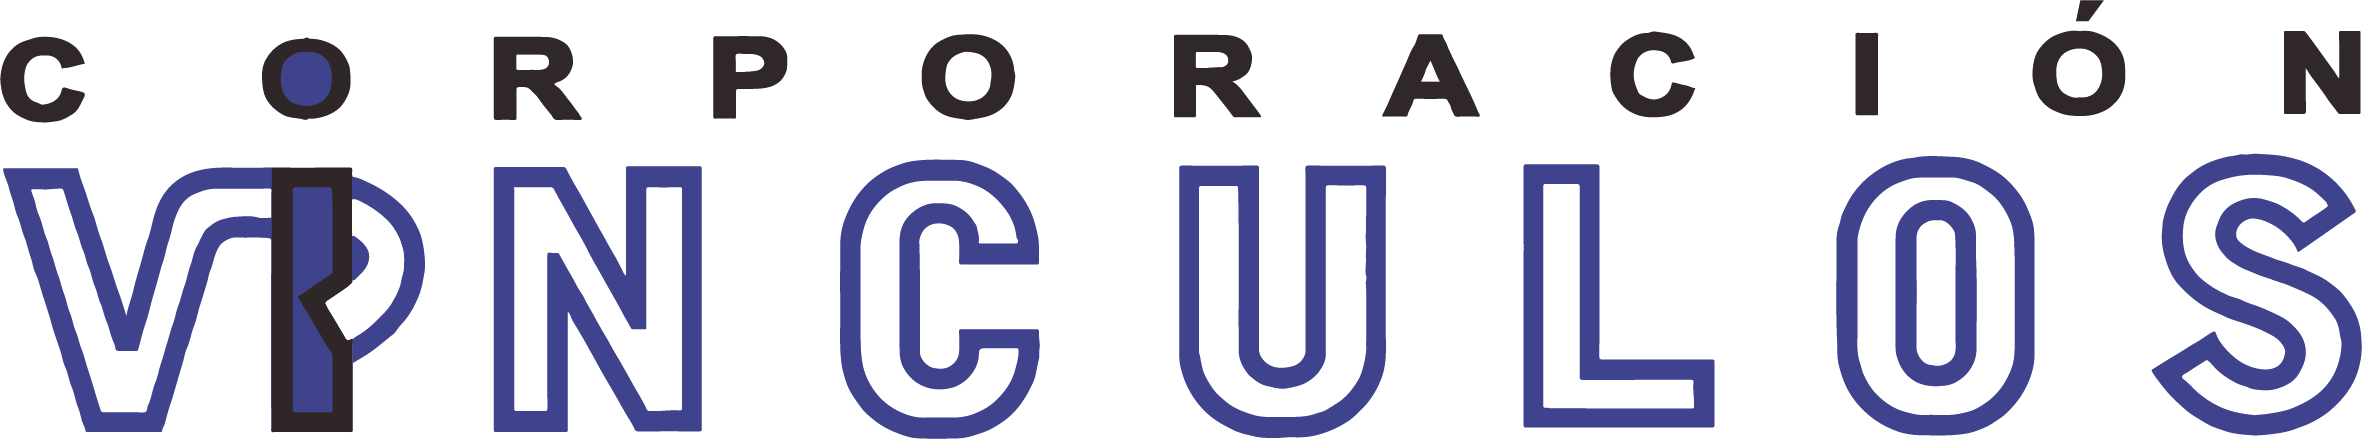 Logo CV Actualizado.png